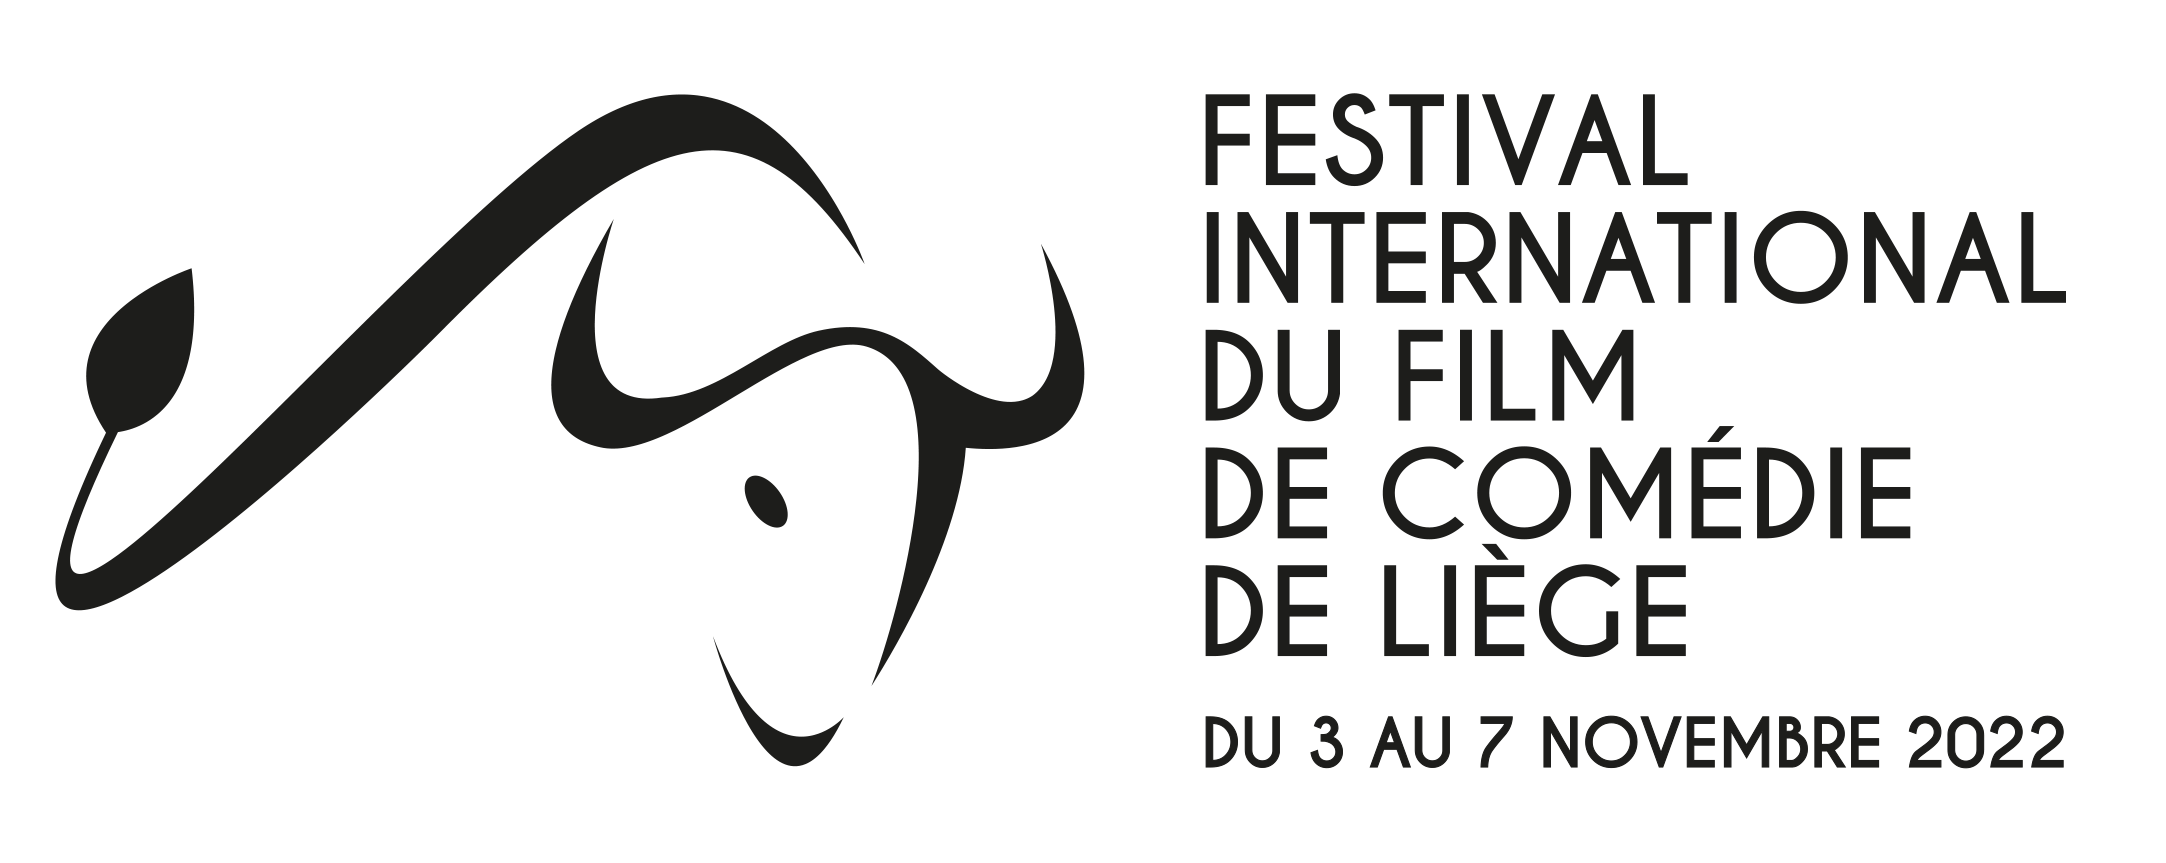 Festival International du Film de Comédie de Liège